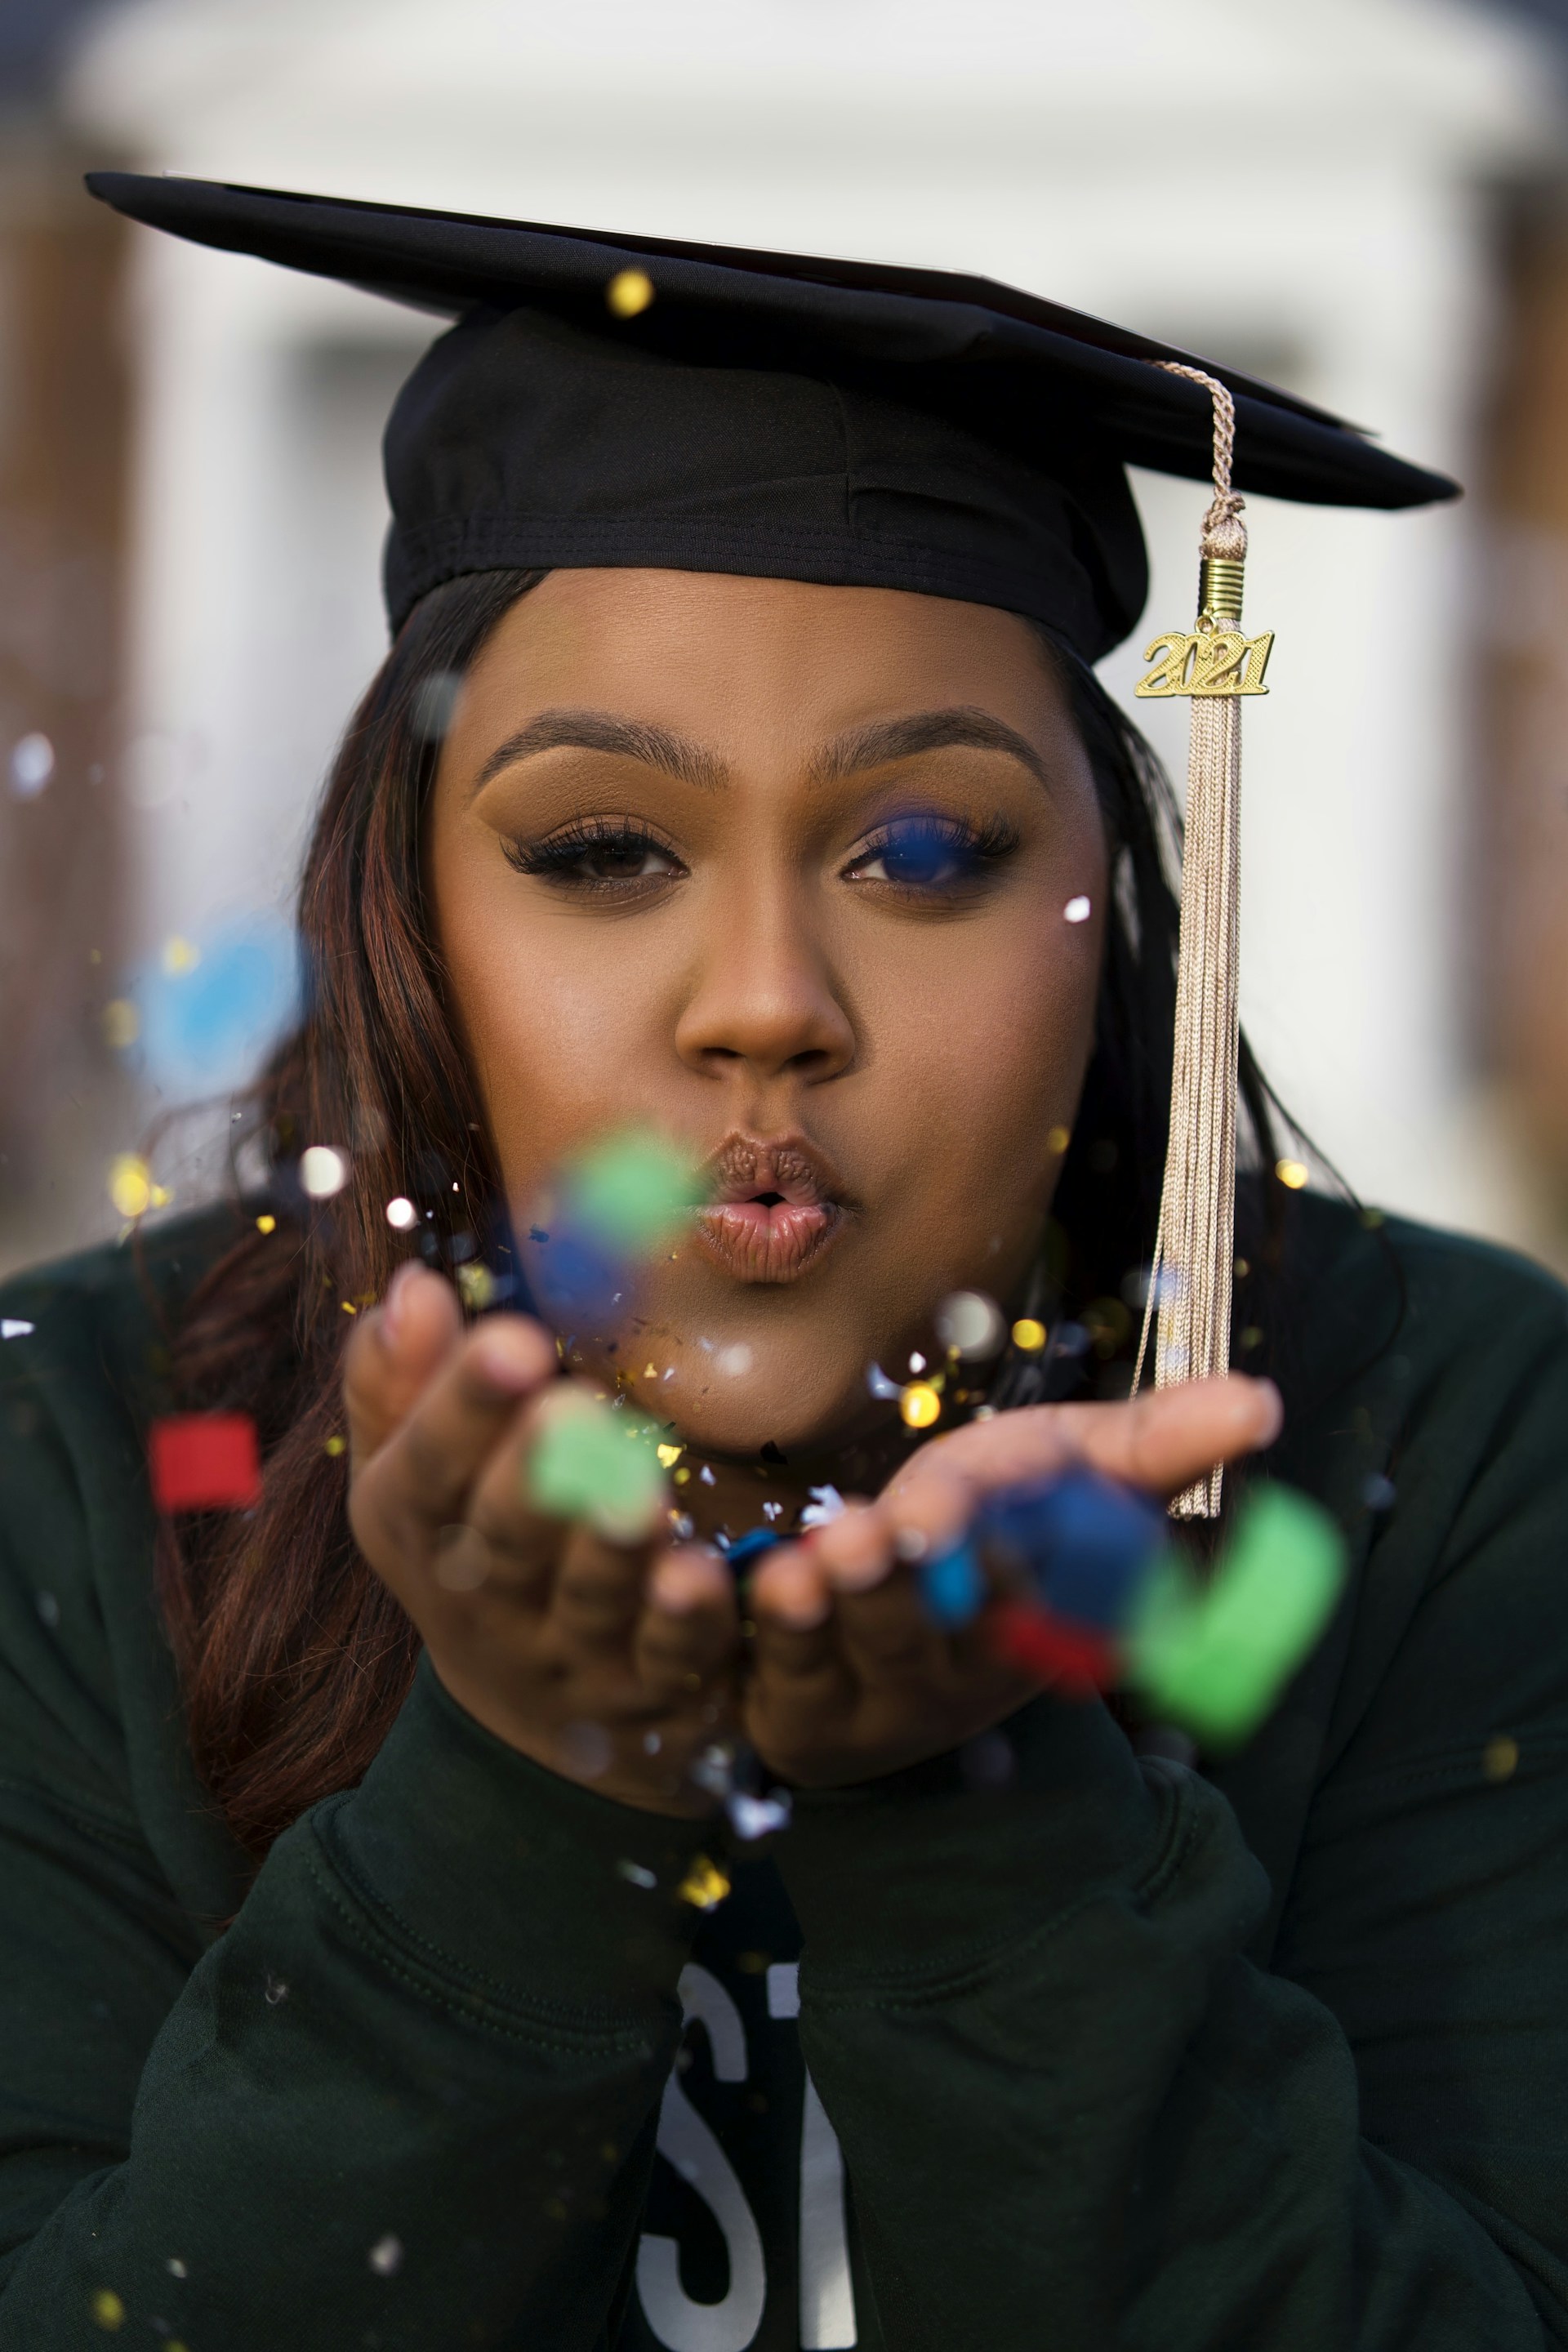 a woman in a graduation cap blowing bubbles